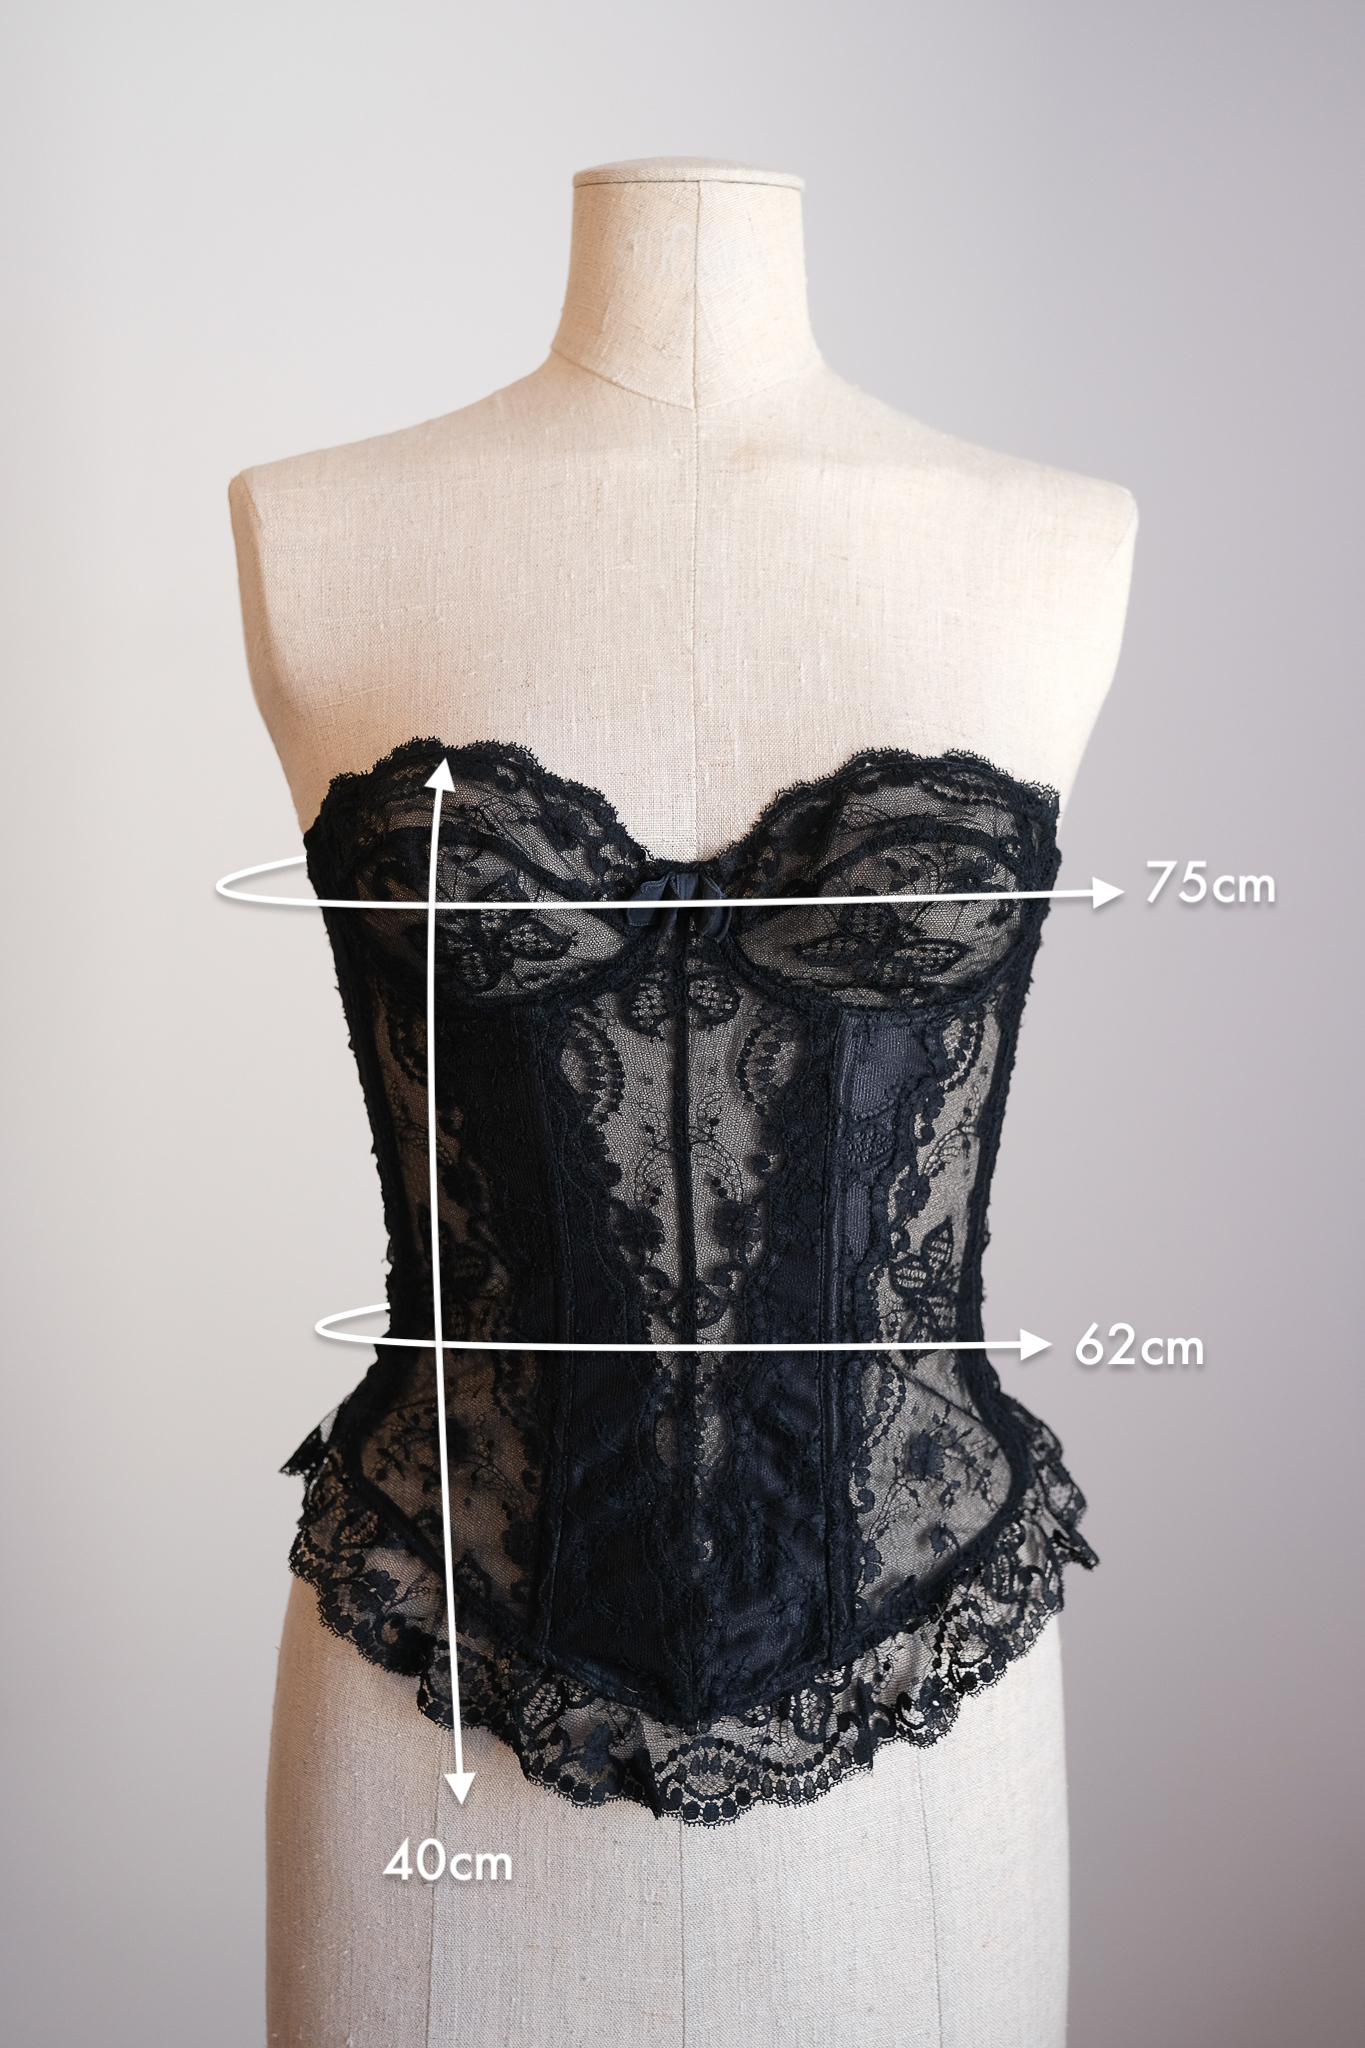 https://emerieu.com/wp-content/uploads/2021/11/EMERIEU-La-Perla-1980s-Black-lace-corset-bustier-vintage-measurements.jpg